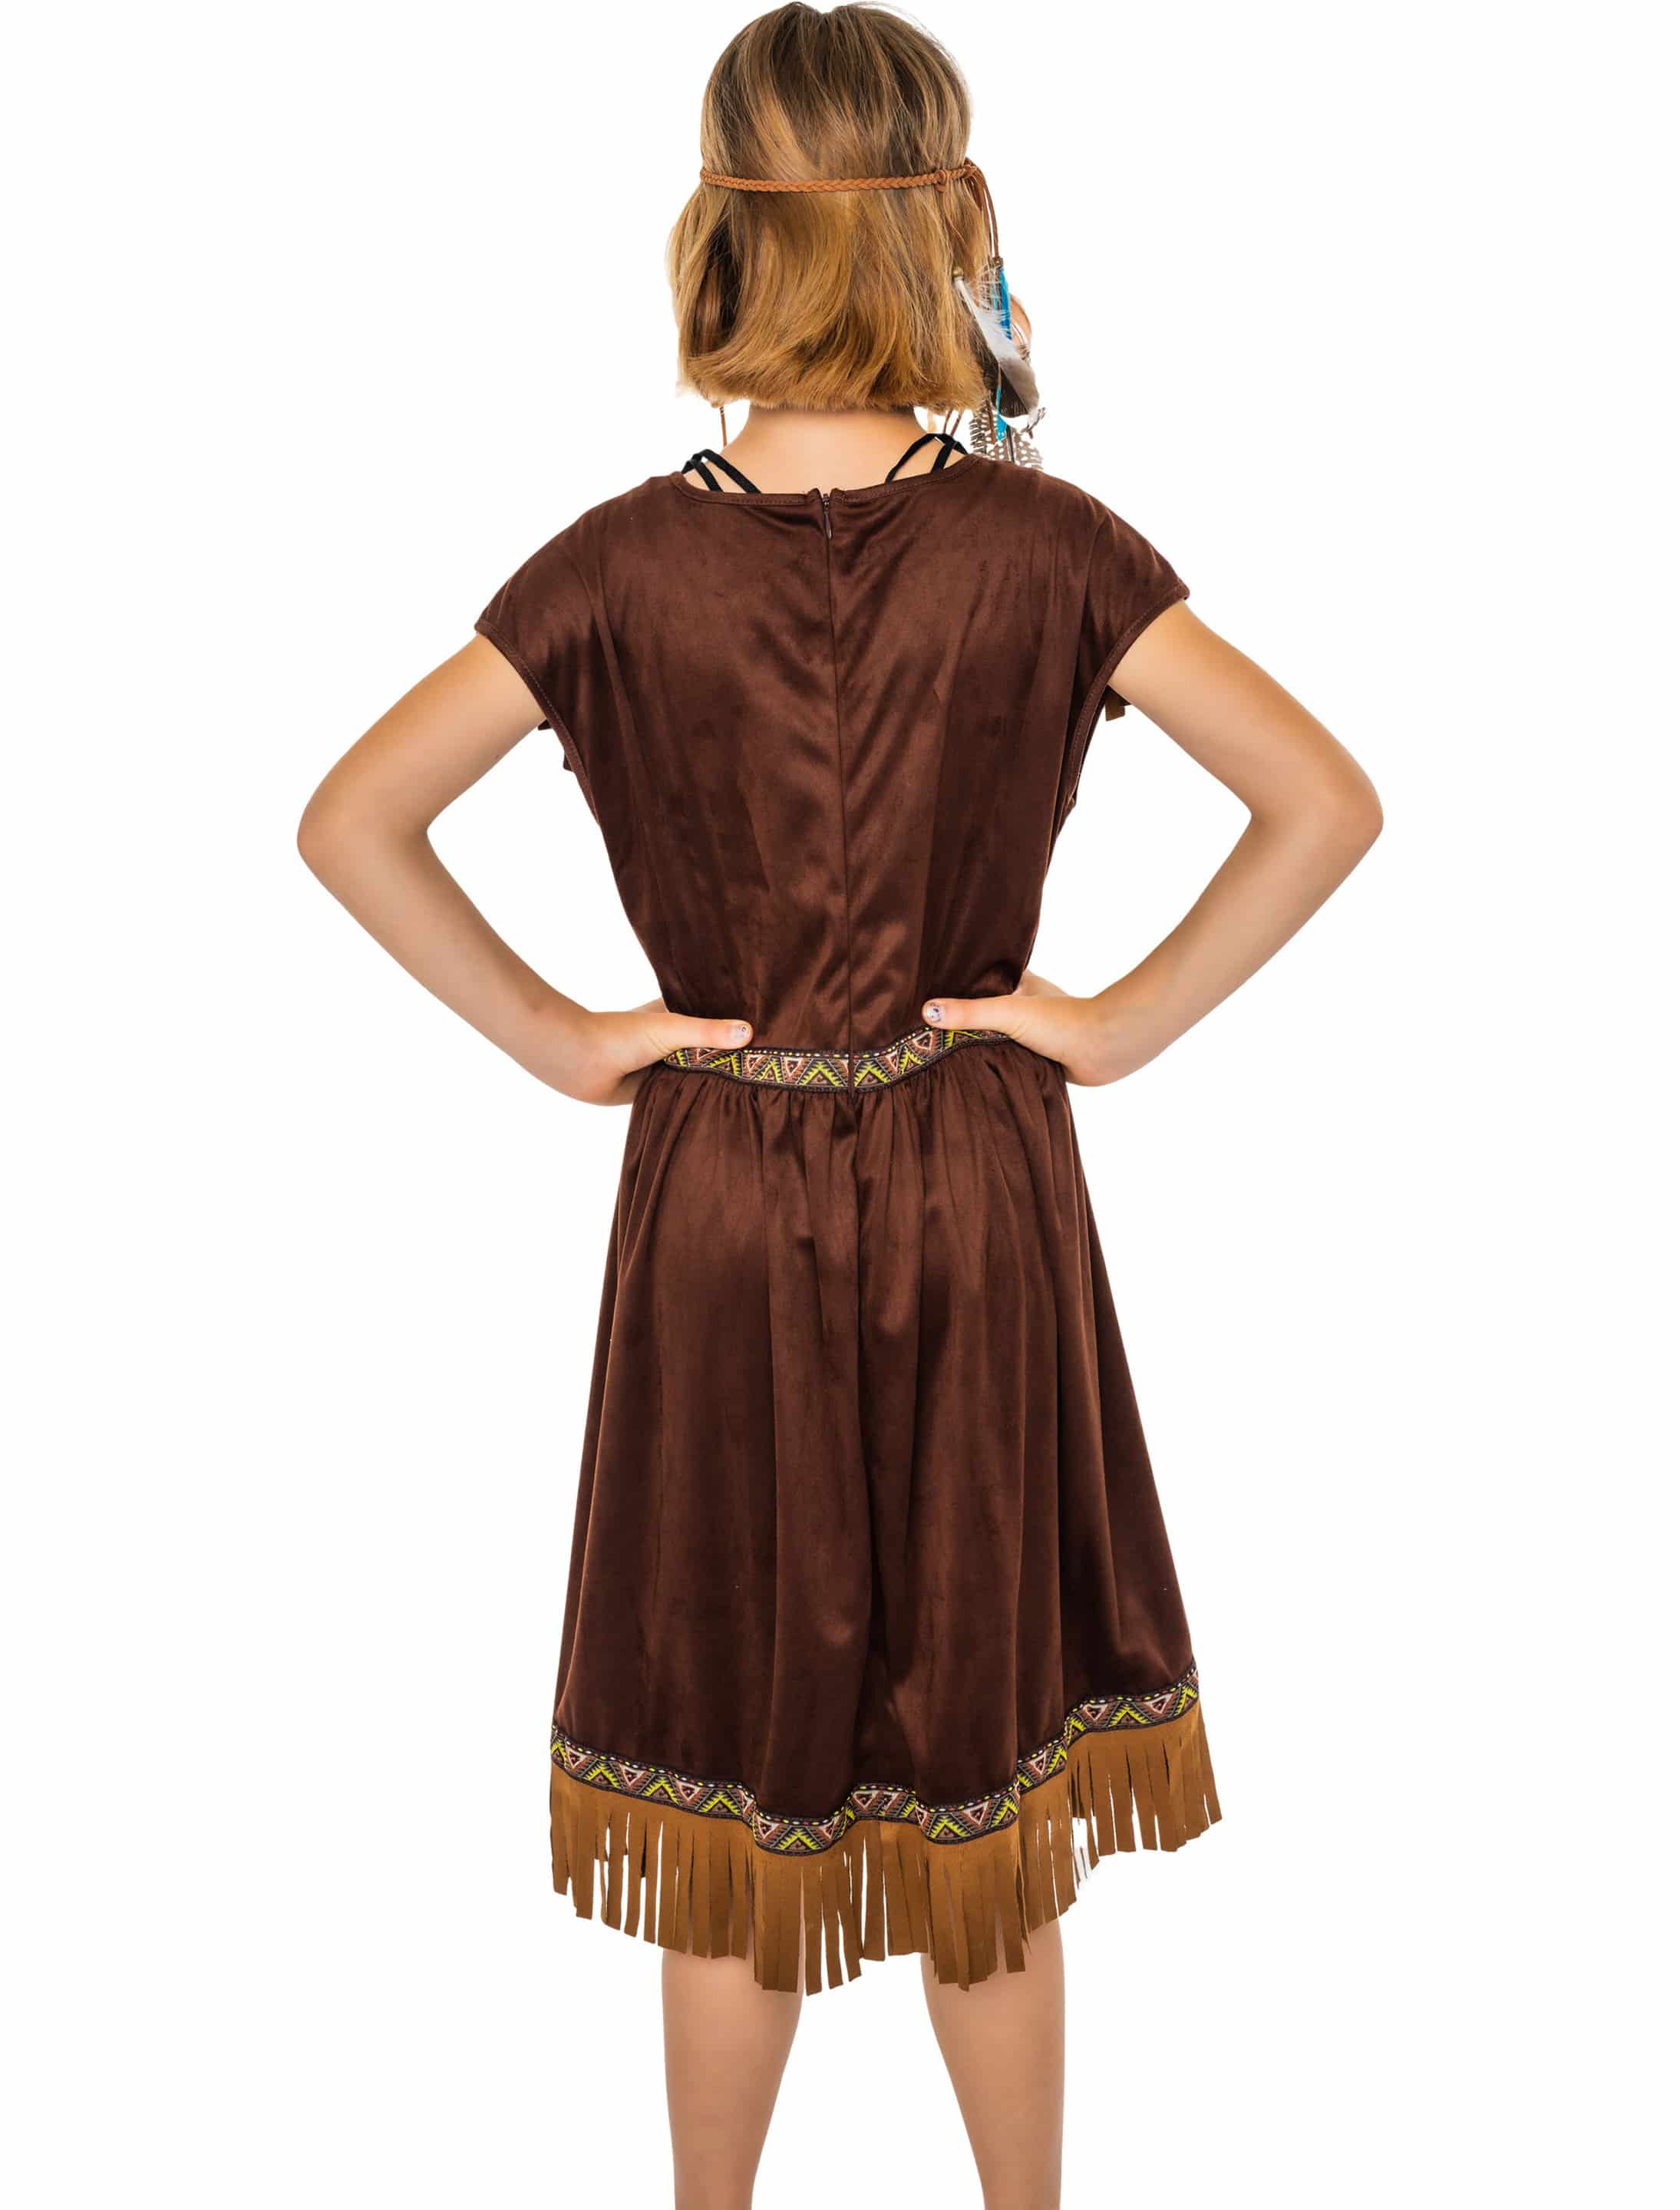 Kleid Indianerin Tahki Kinder Mädchen braun 128